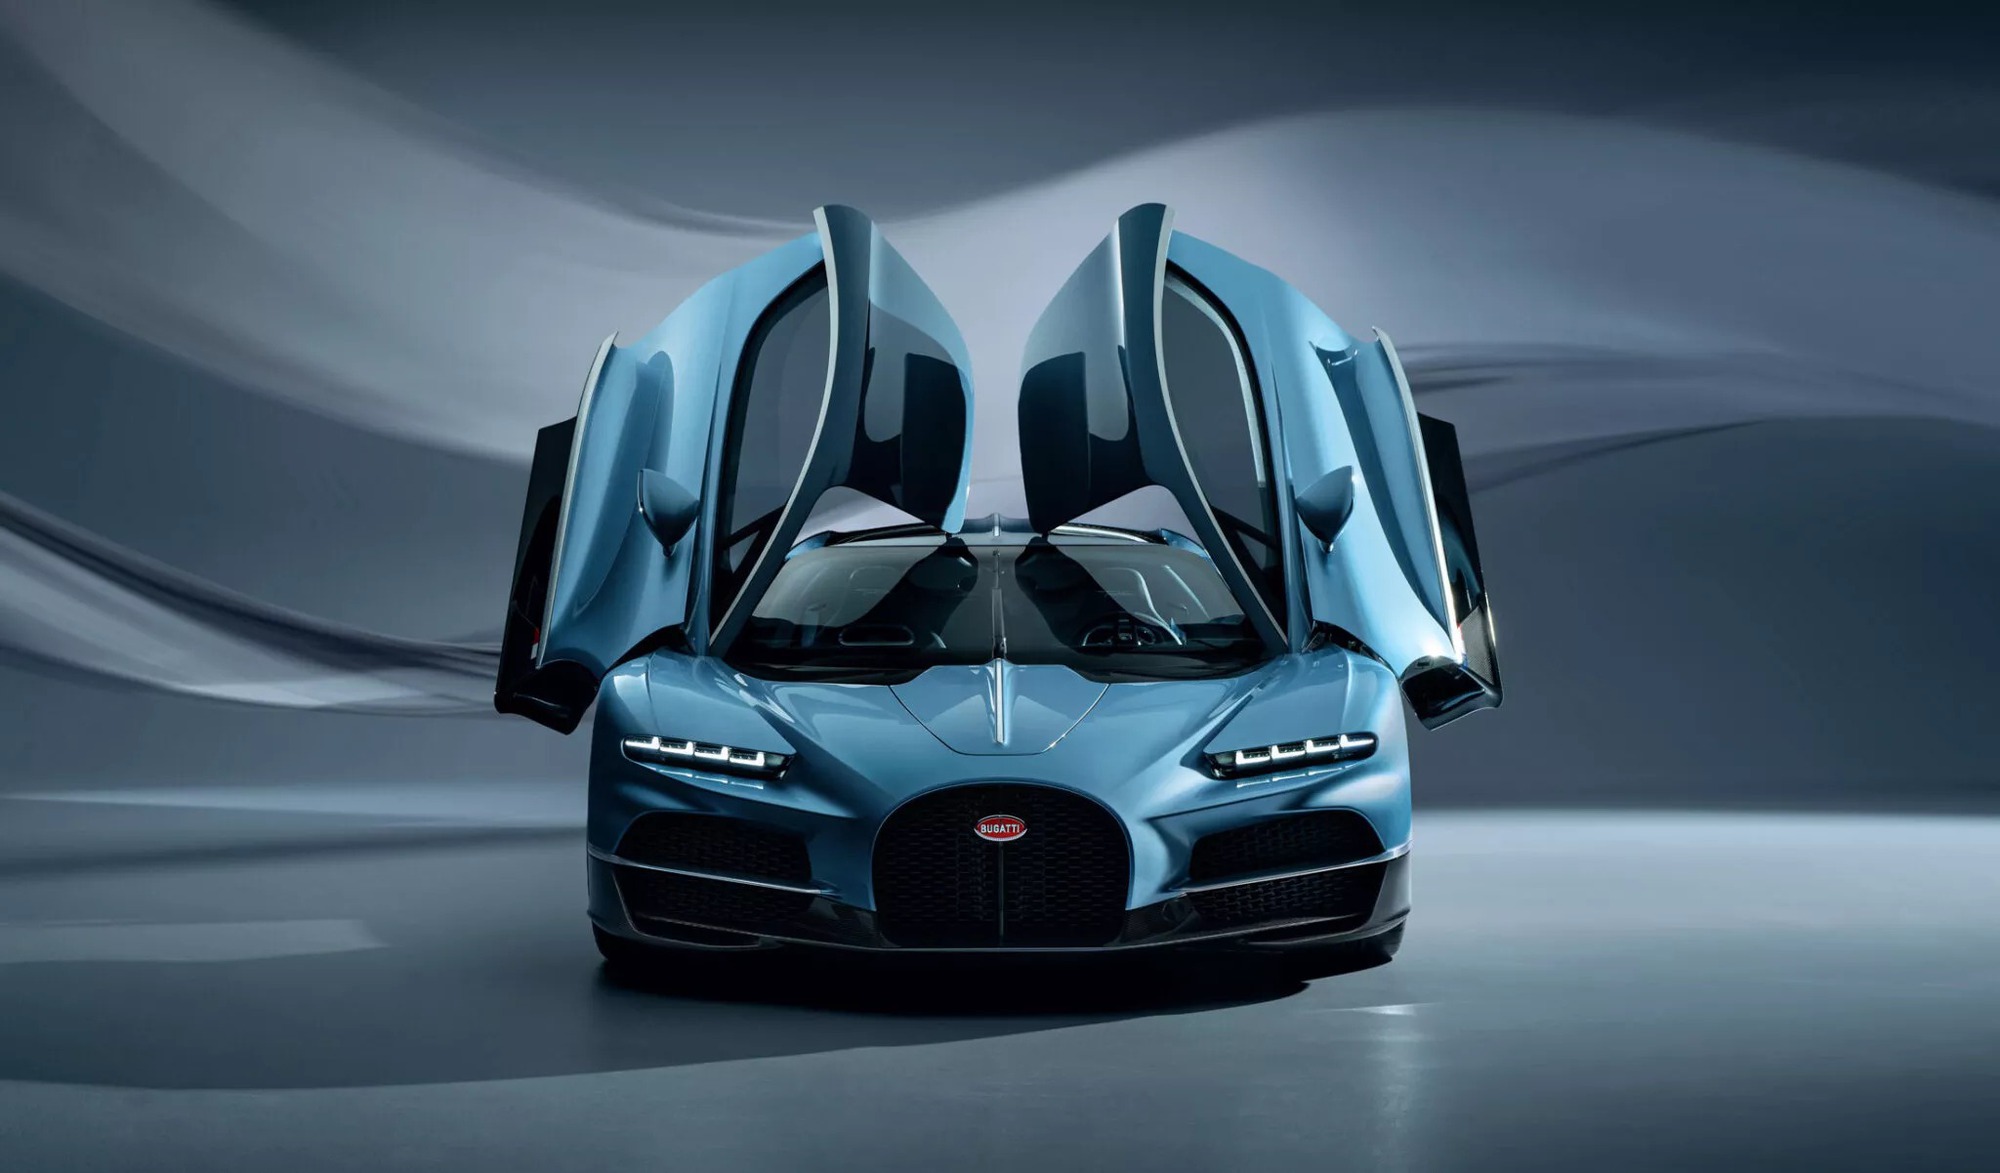 Bugatti Tourbillon Hybrid ra mắt: Mọi thông số khủng hơn Chiron, 0-100km/h chỉ trong 2 giây, tối đa 445km/h- Ảnh 4.